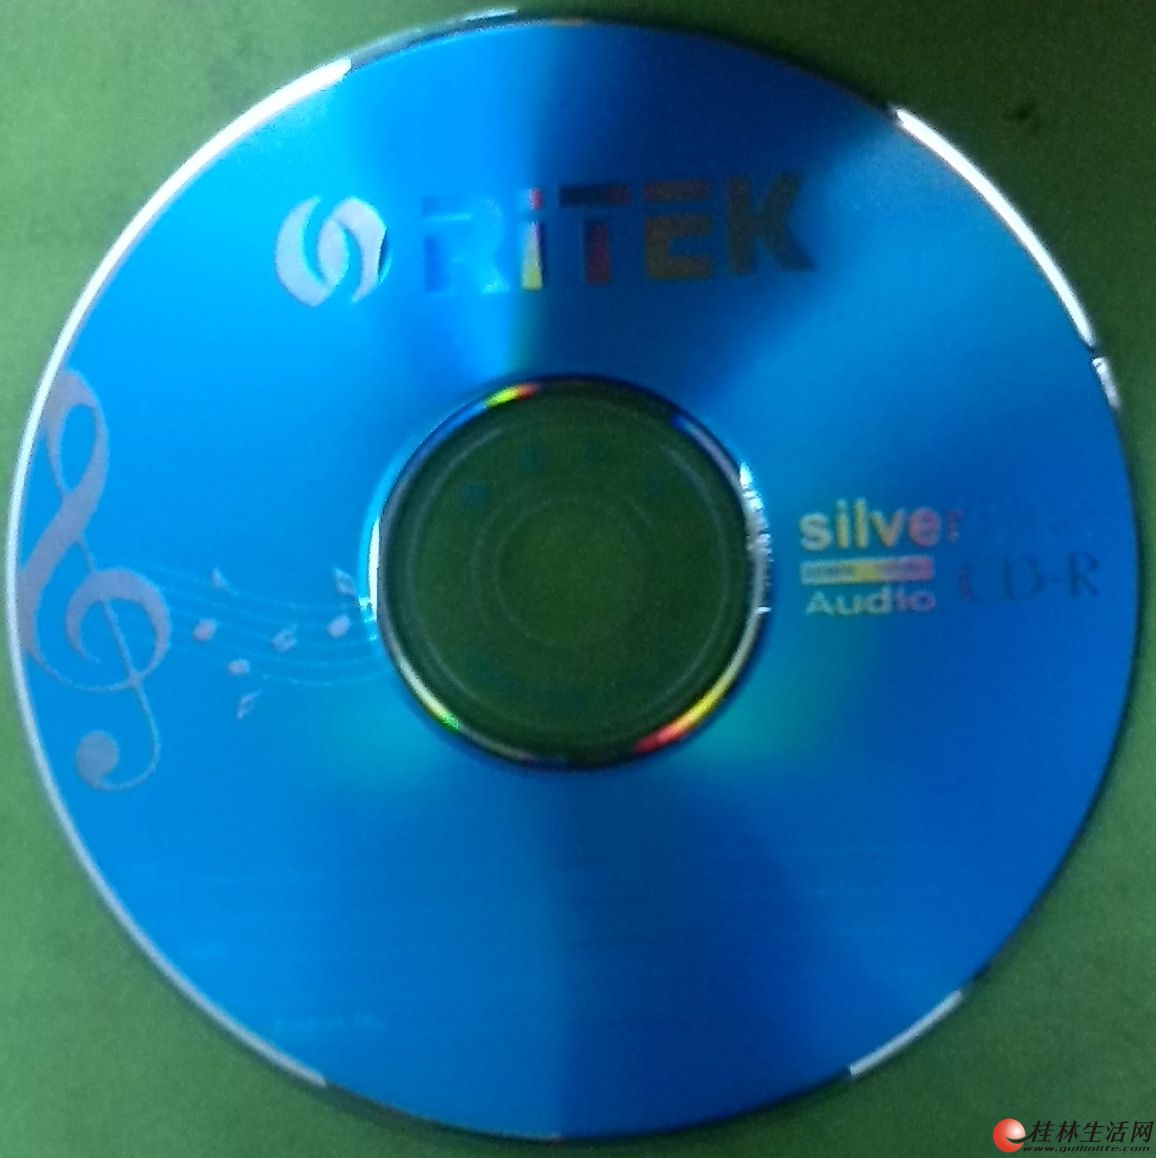 强音发烧,桂林发烧刻录第一品牌 - CD\/DVD